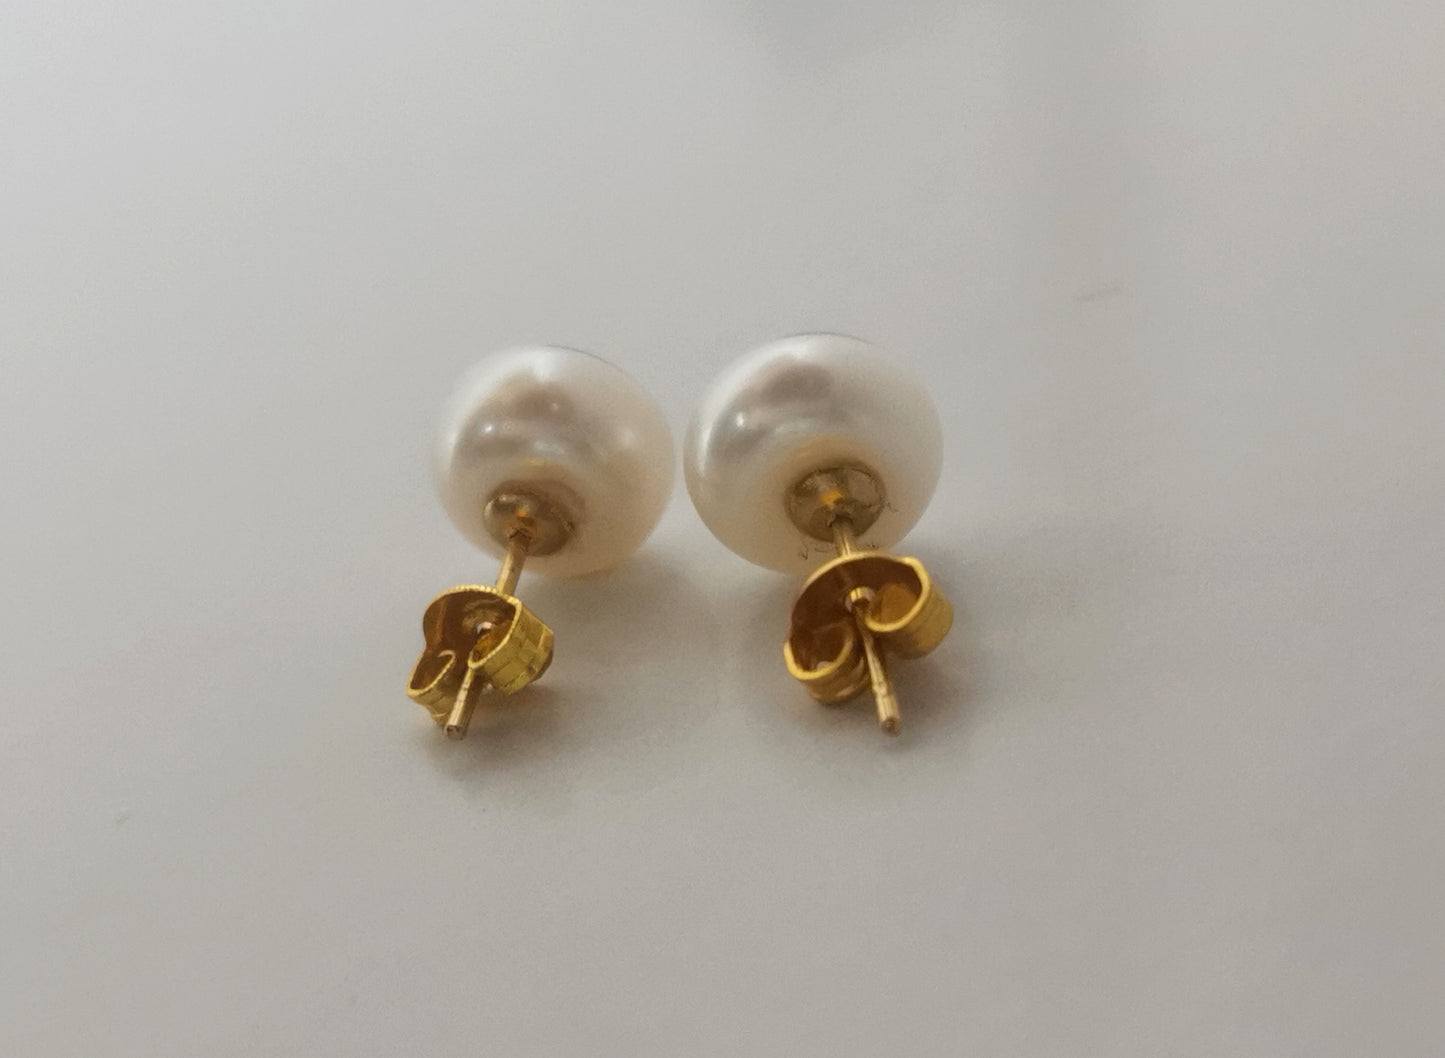 Boucles d'oreilles perles de culture blanches 9mm montées sur clous plaqués or. Présentées cote à cote, perles en haut, posées sur un fond blanc. Vue en très gros plan de face.